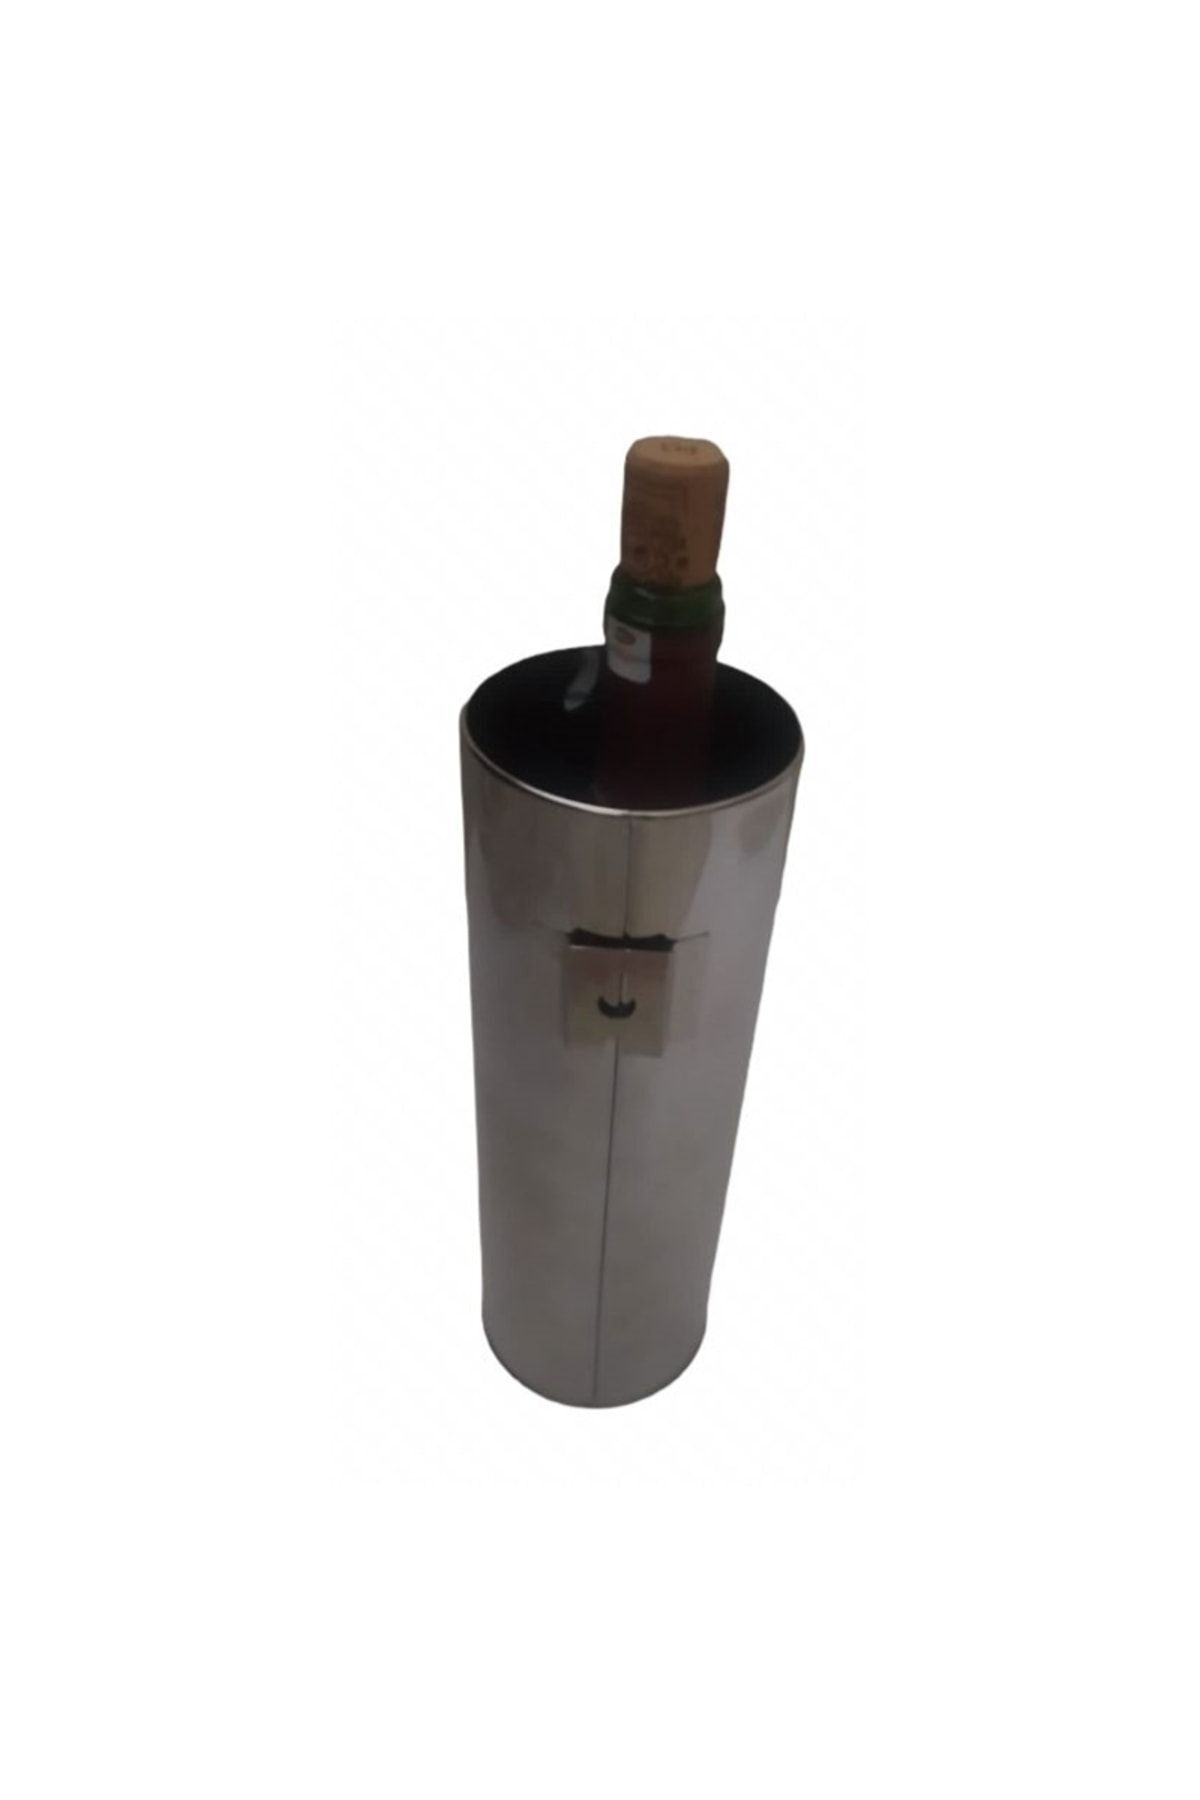 Bahat Paslanmaz Çelik Şarap Soğutucu Duvara Askılı Çiçeklik Vazo 26,5 Cm